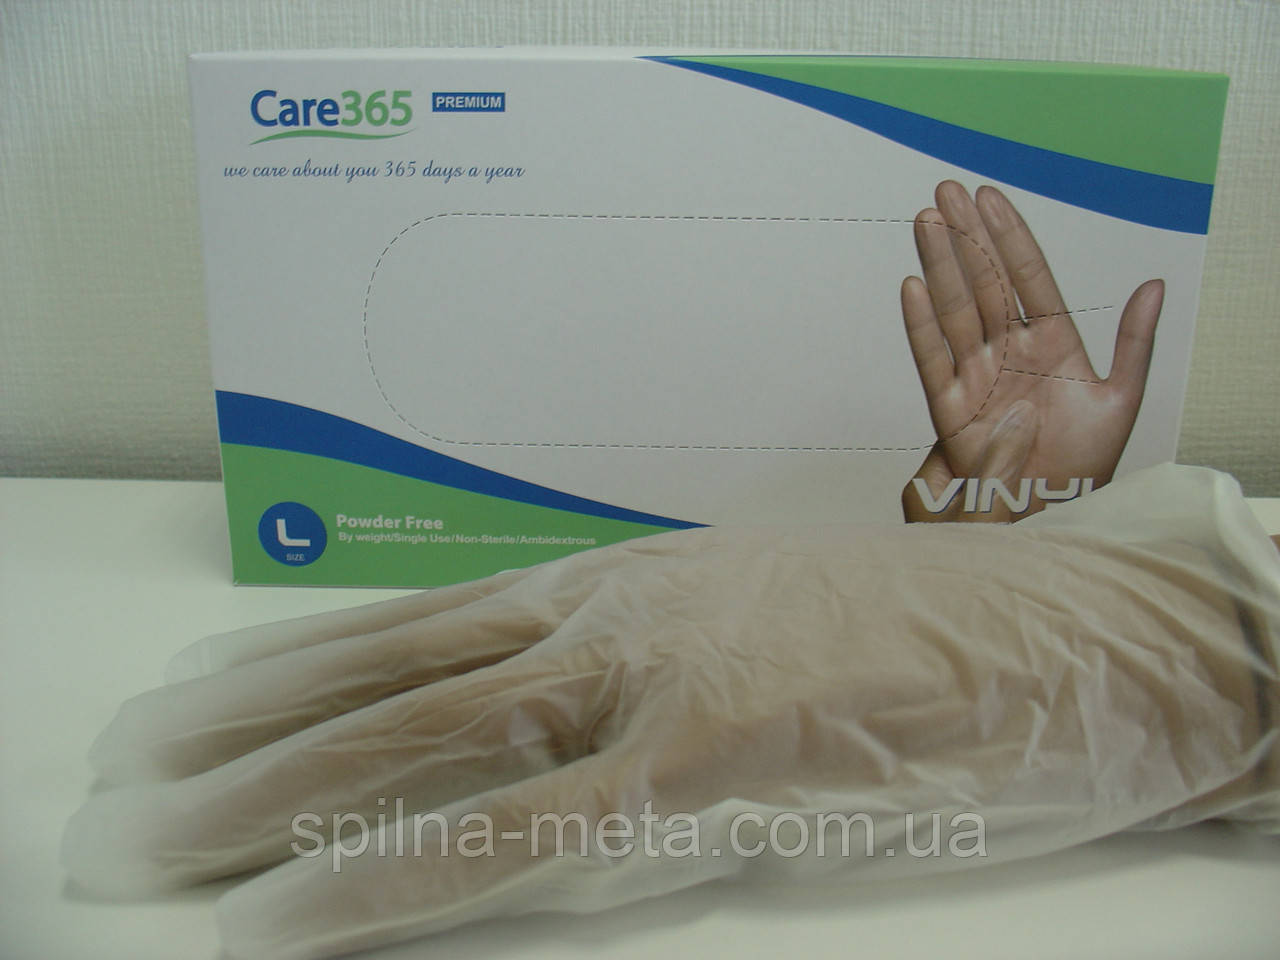 Рукавички вінілові одноразові Care365 Premium, 100 шт./упак